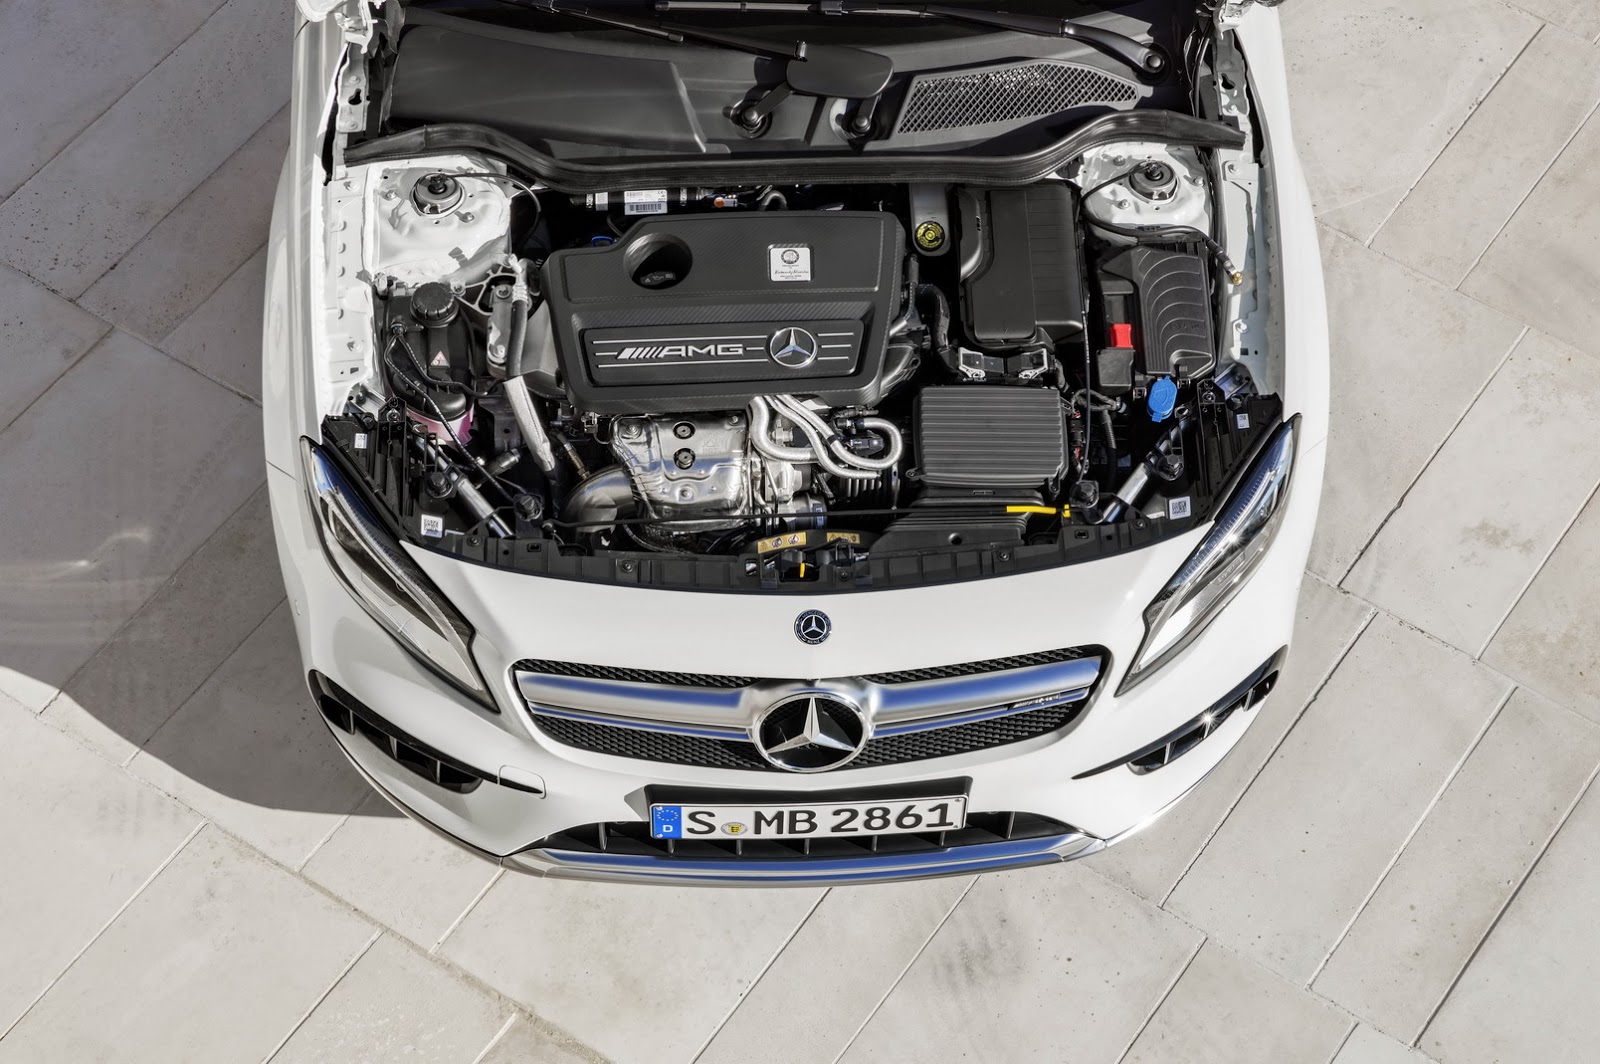 Mercedes-AMG GLA 45 2017